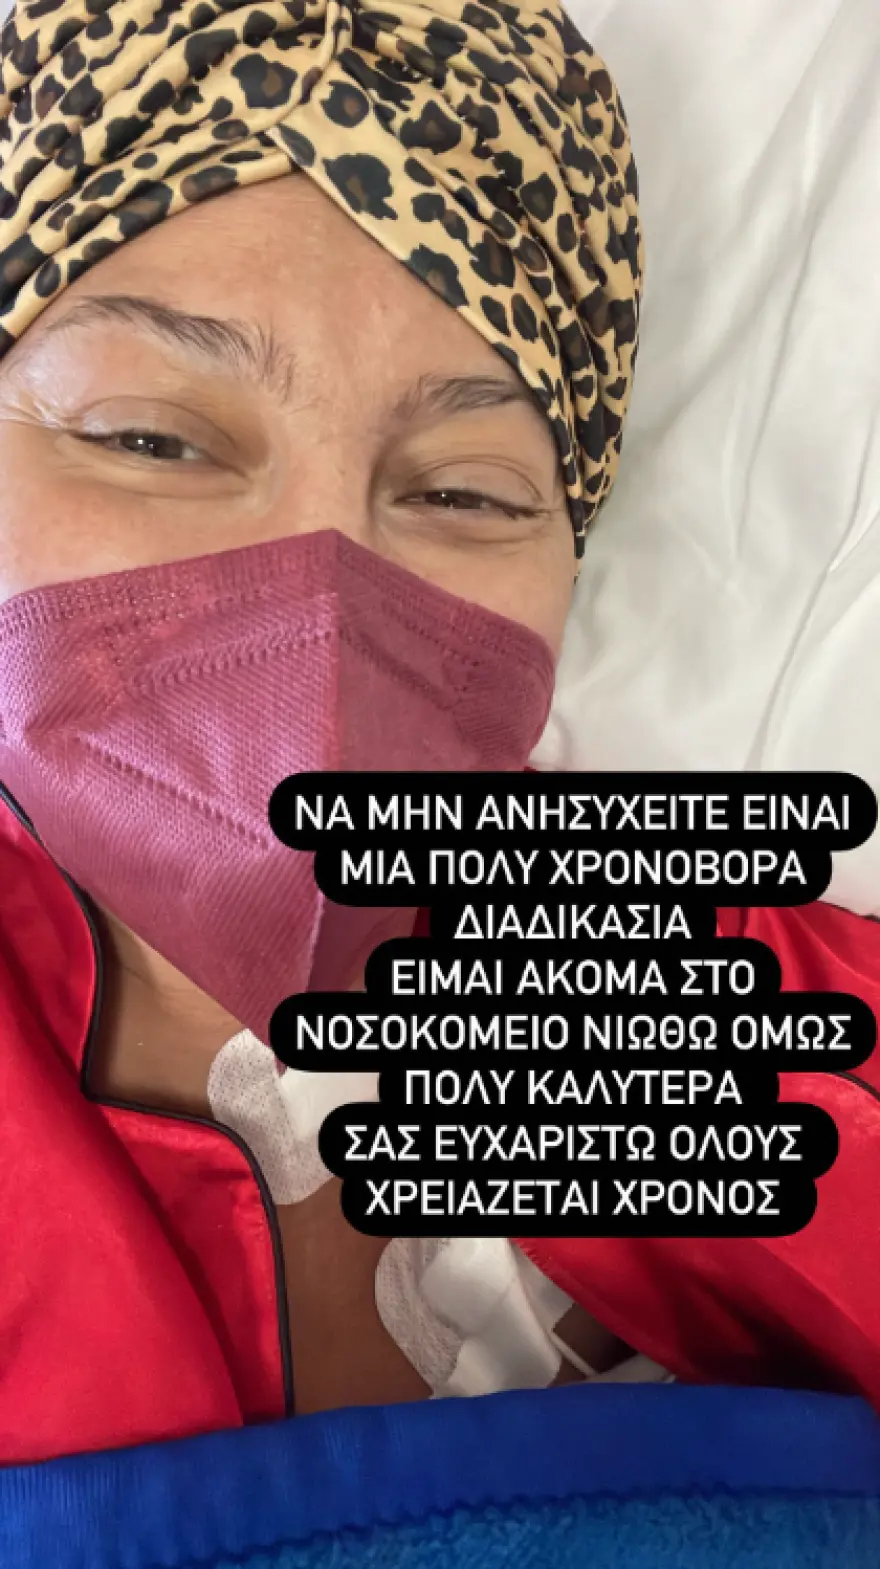 Ρεγγίνα Μακέδου: Η νέα της ανάρτηση από το νοσοκομείο -«Μην ανησυχείτε»